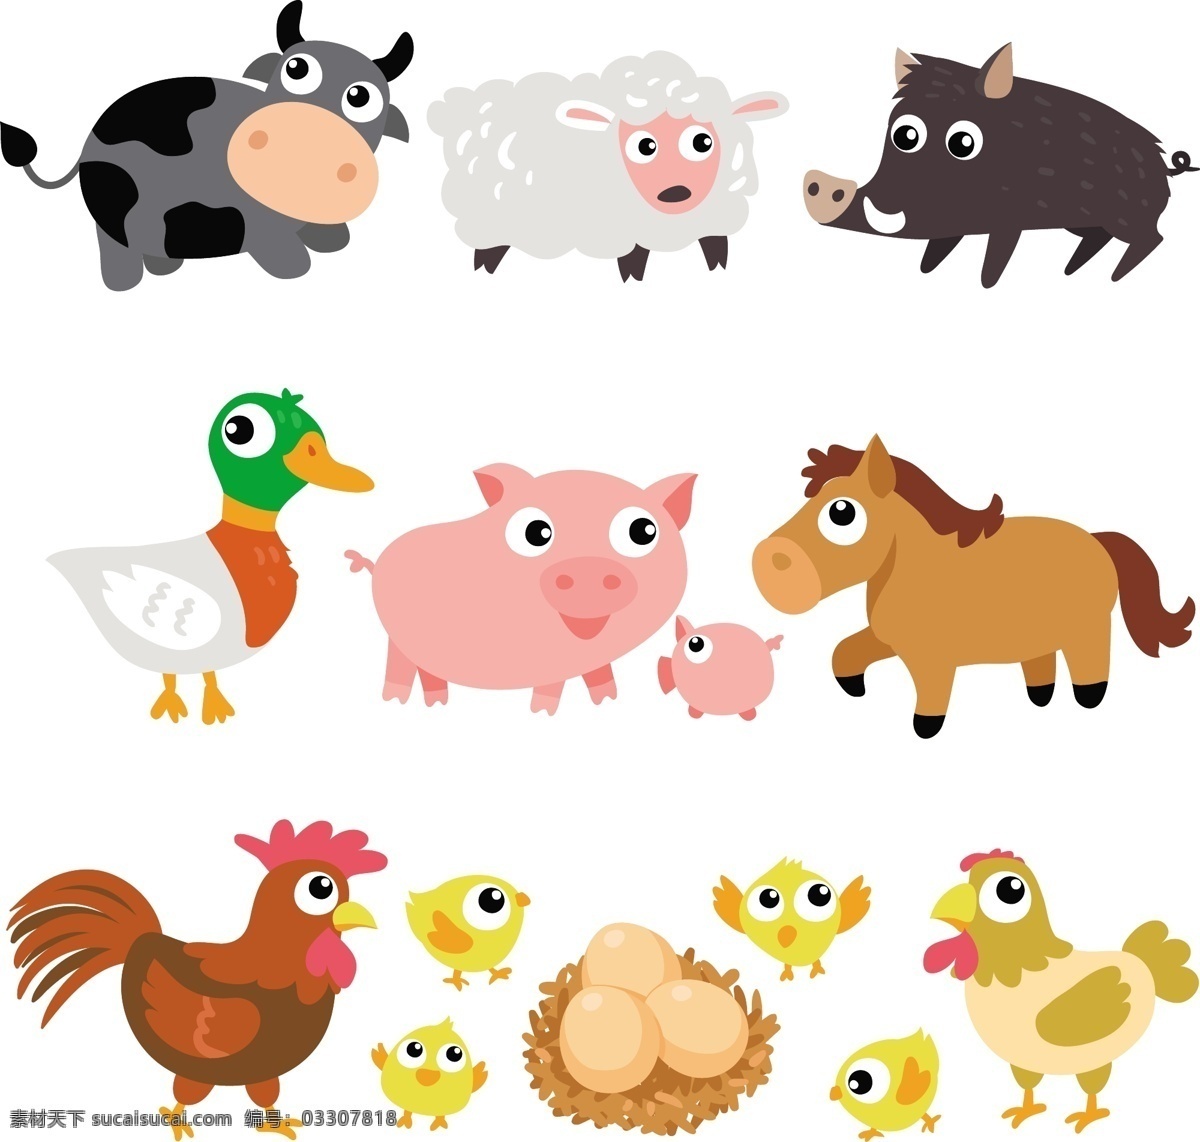 组 可爱 家禽 小 动物 卡通 卡哇伊 矢量素材 小动物 创意设计 简约 创意 元素 生物元素 动物元素